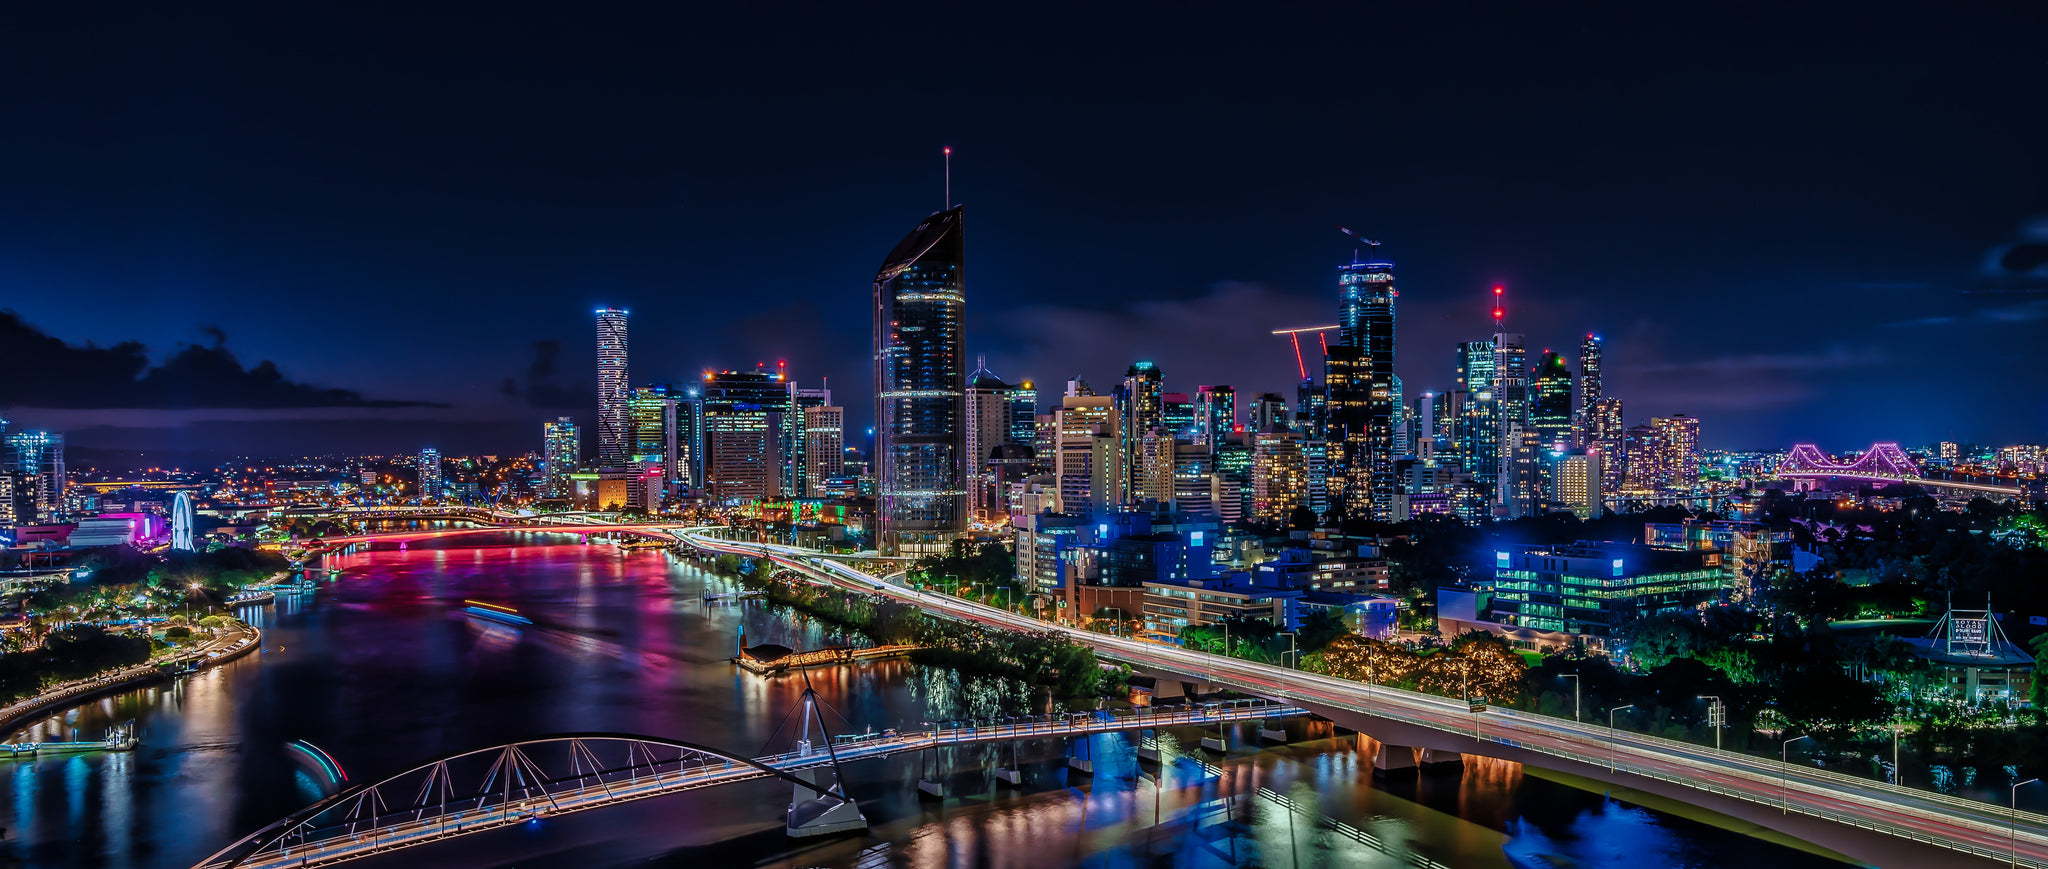 Brisbane City Nightview